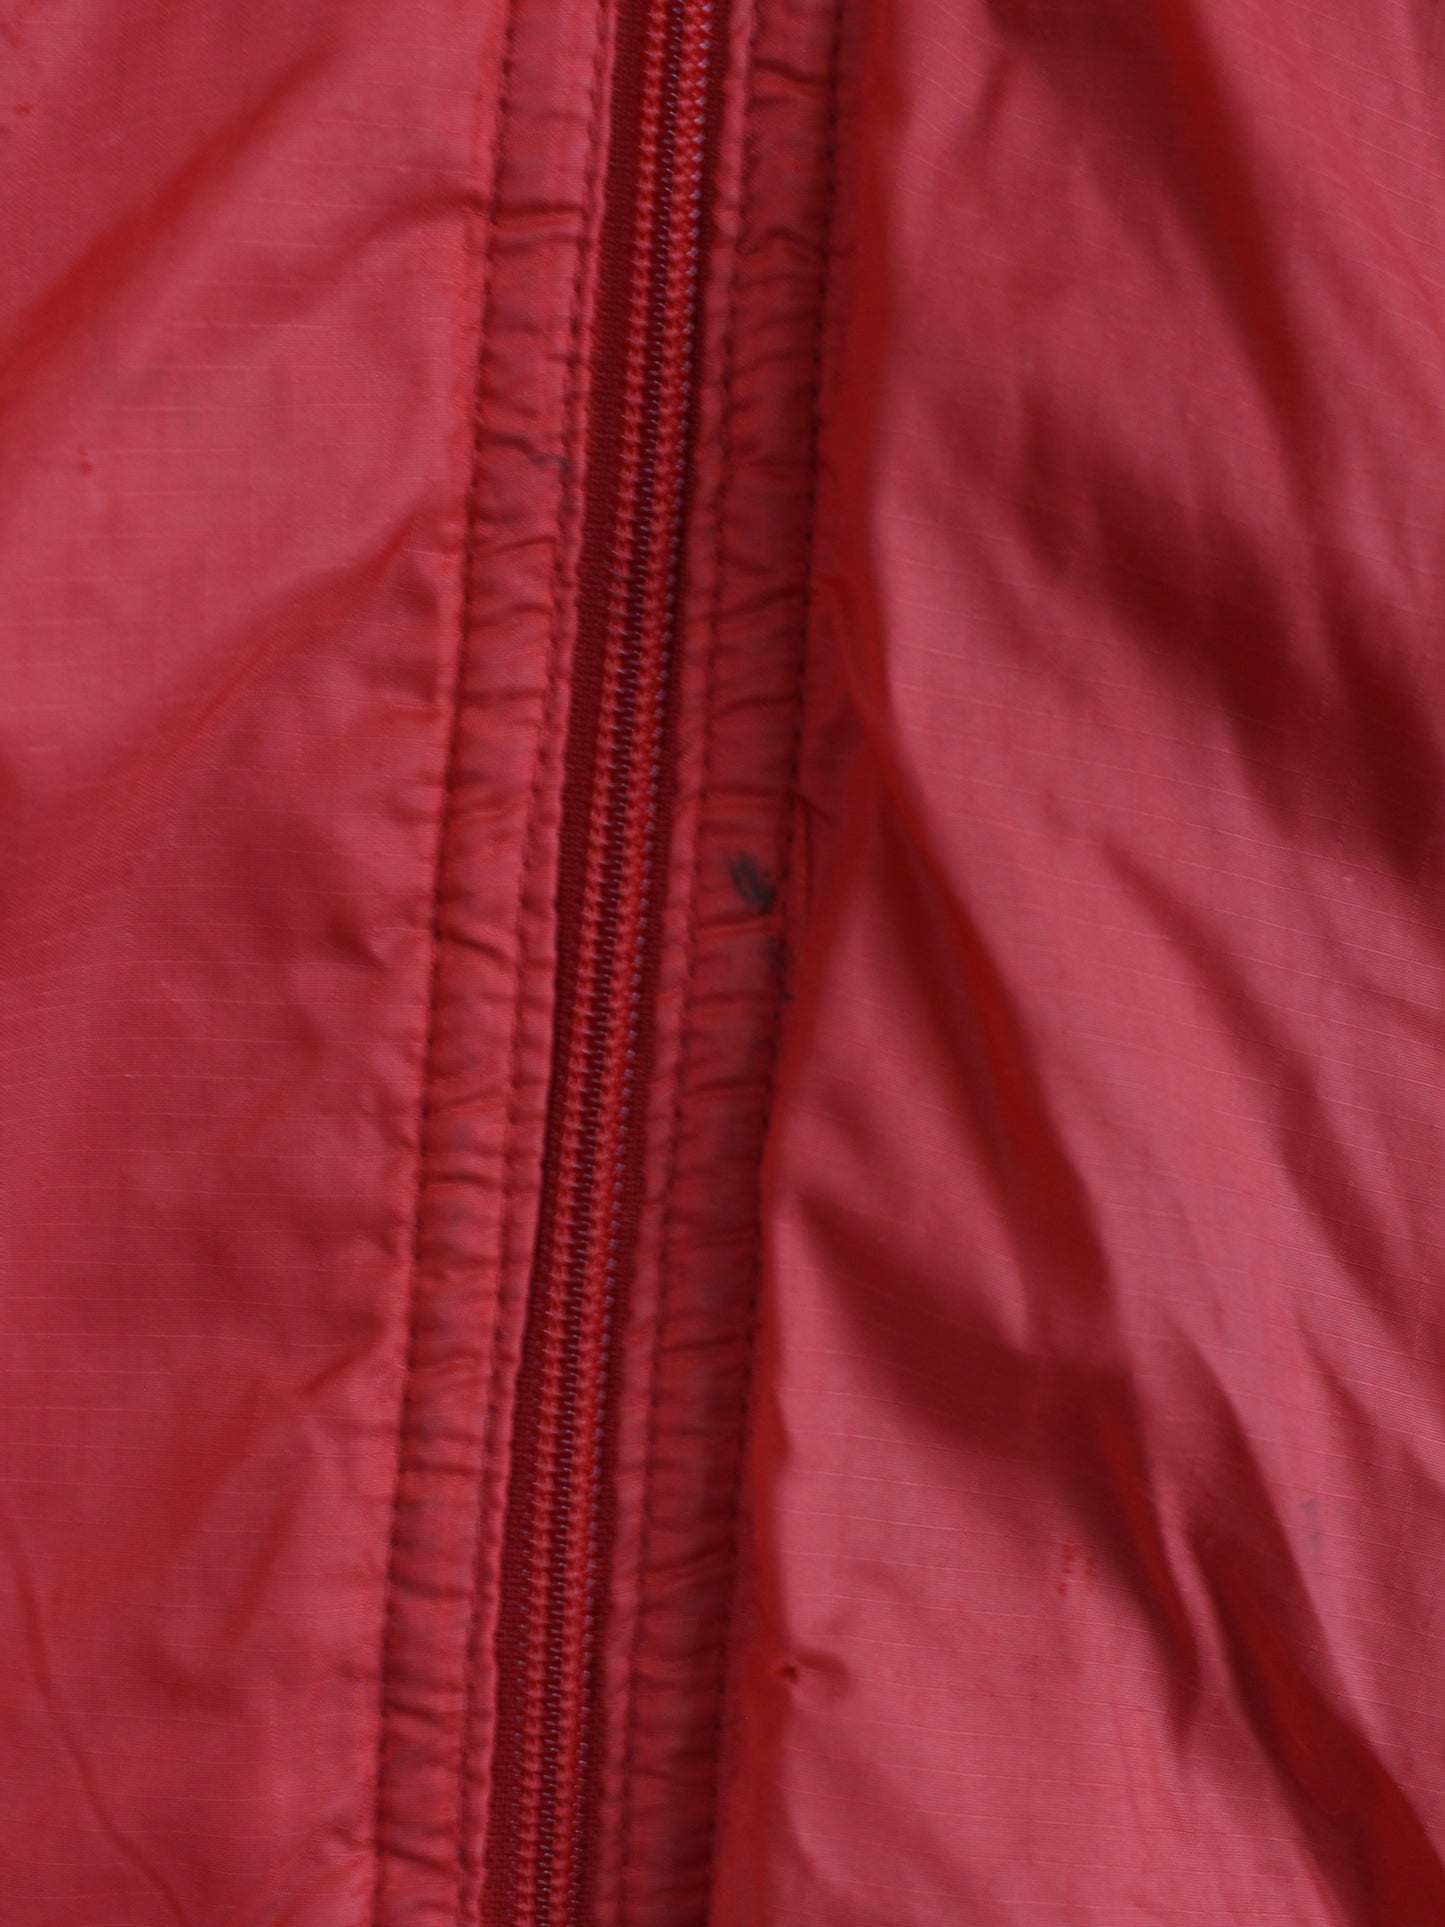 Patagonia Jacke Rot L